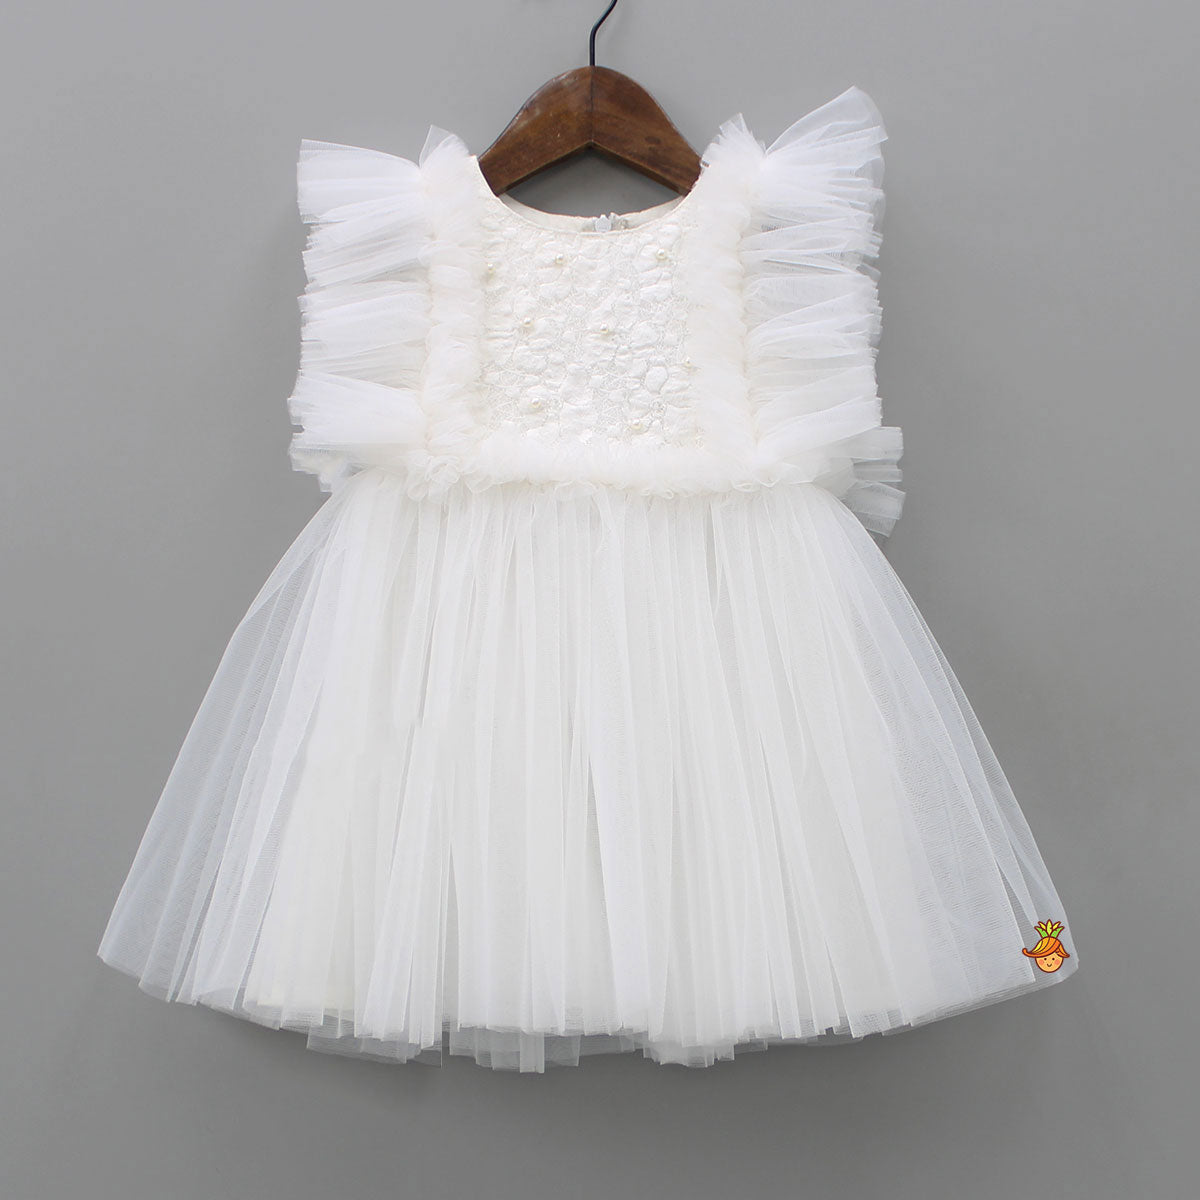 Beautiful White Frilly Dress